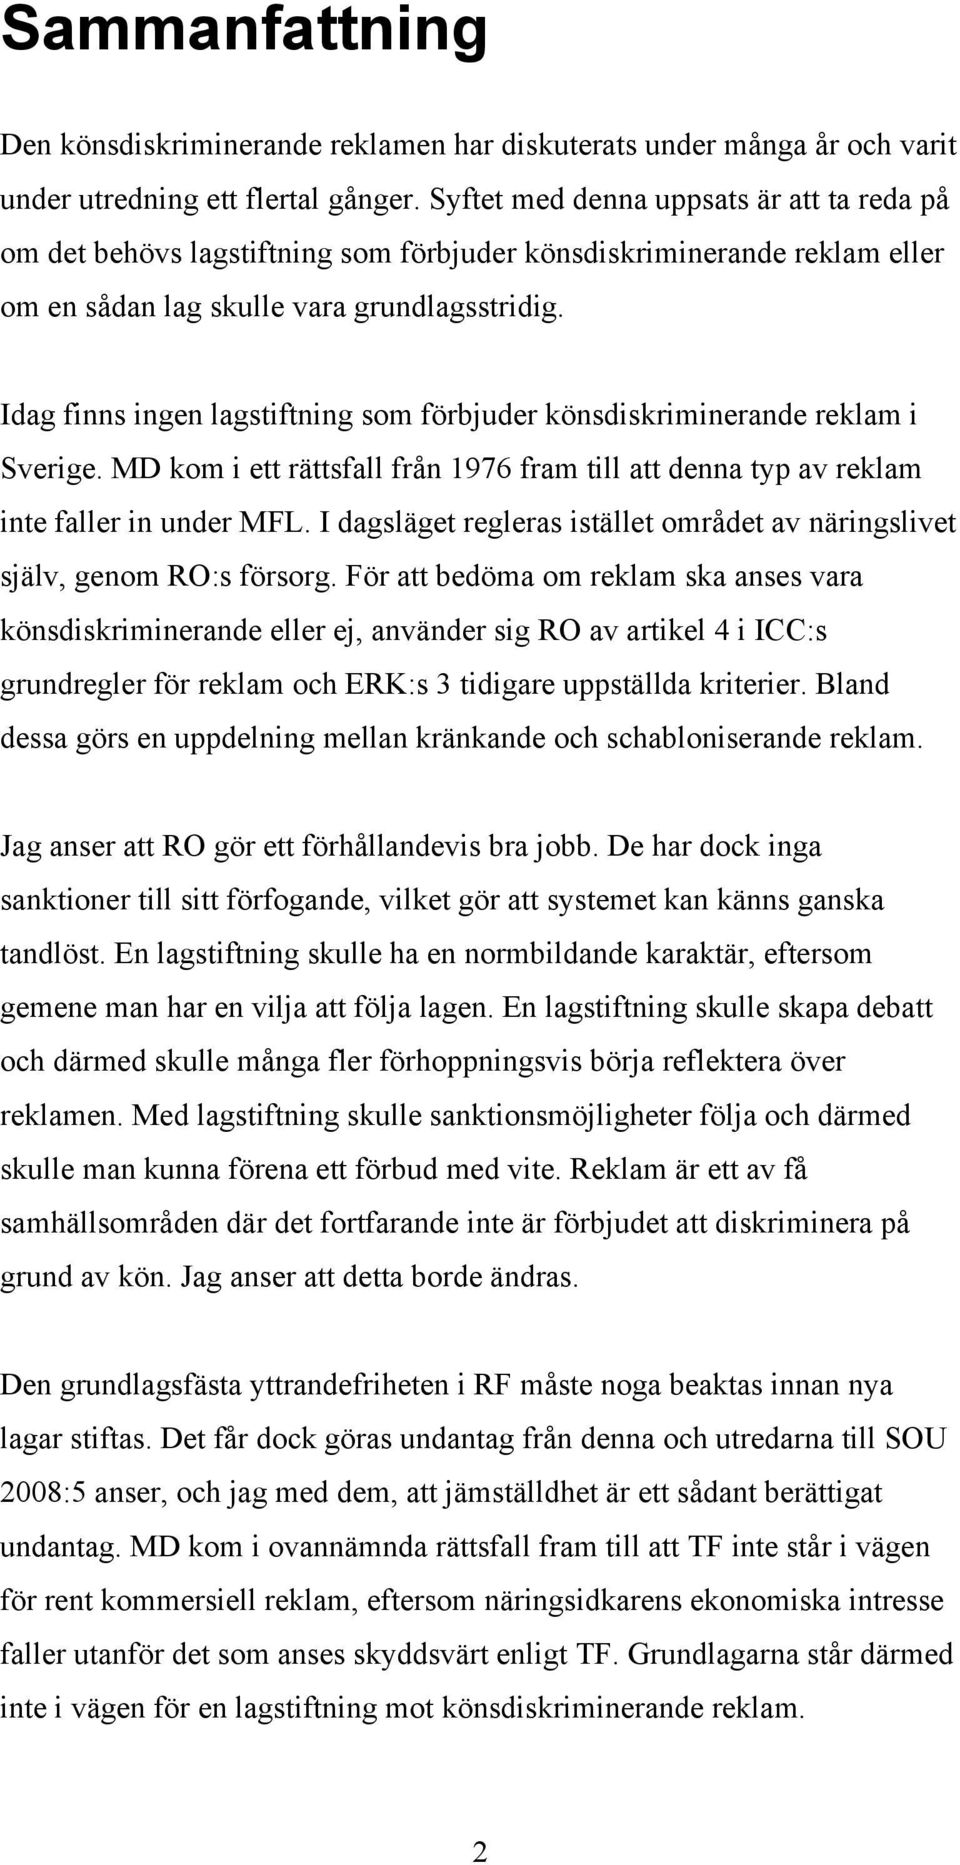 Idag finns ingen lagstiftning som förbjuder könsdiskriminerande reklam i Sverige. MD kom i ett rättsfall från 1976 fram till att denna typ av reklam inte faller in under MFL.